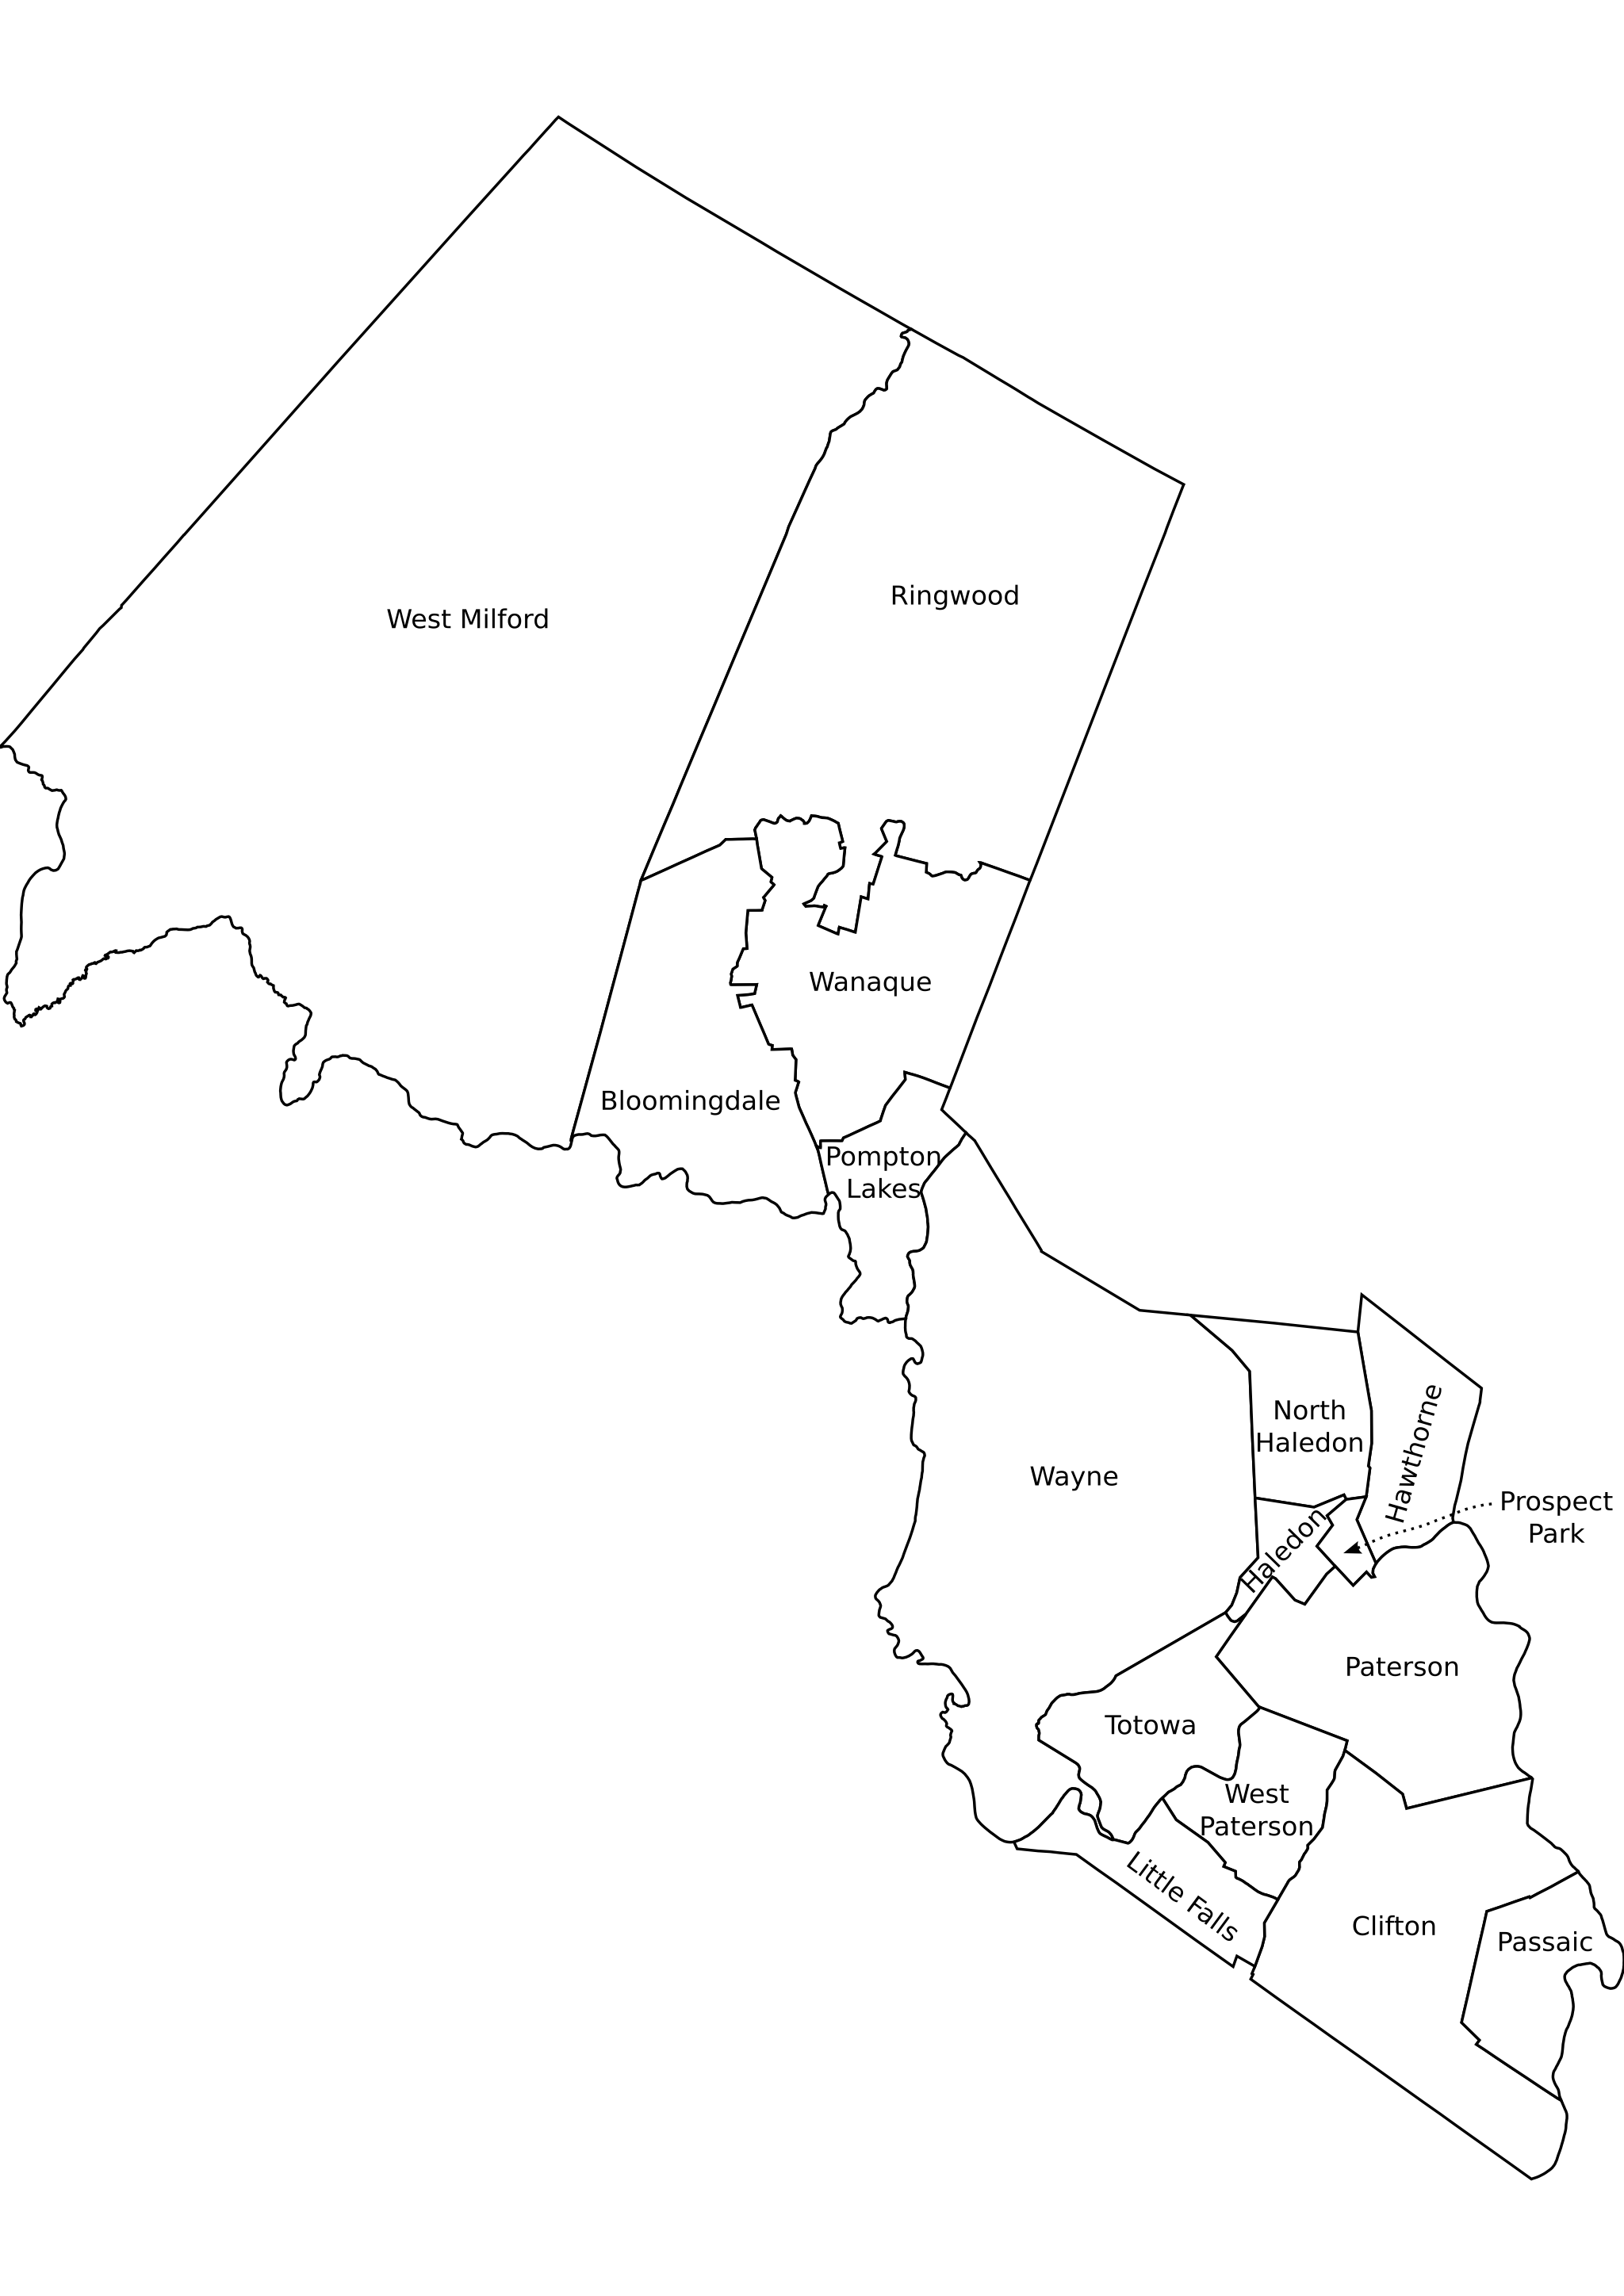 passaic county maps File Passaic County Nj Municipalities Labeled Png Wikimedia Commons passaic county maps